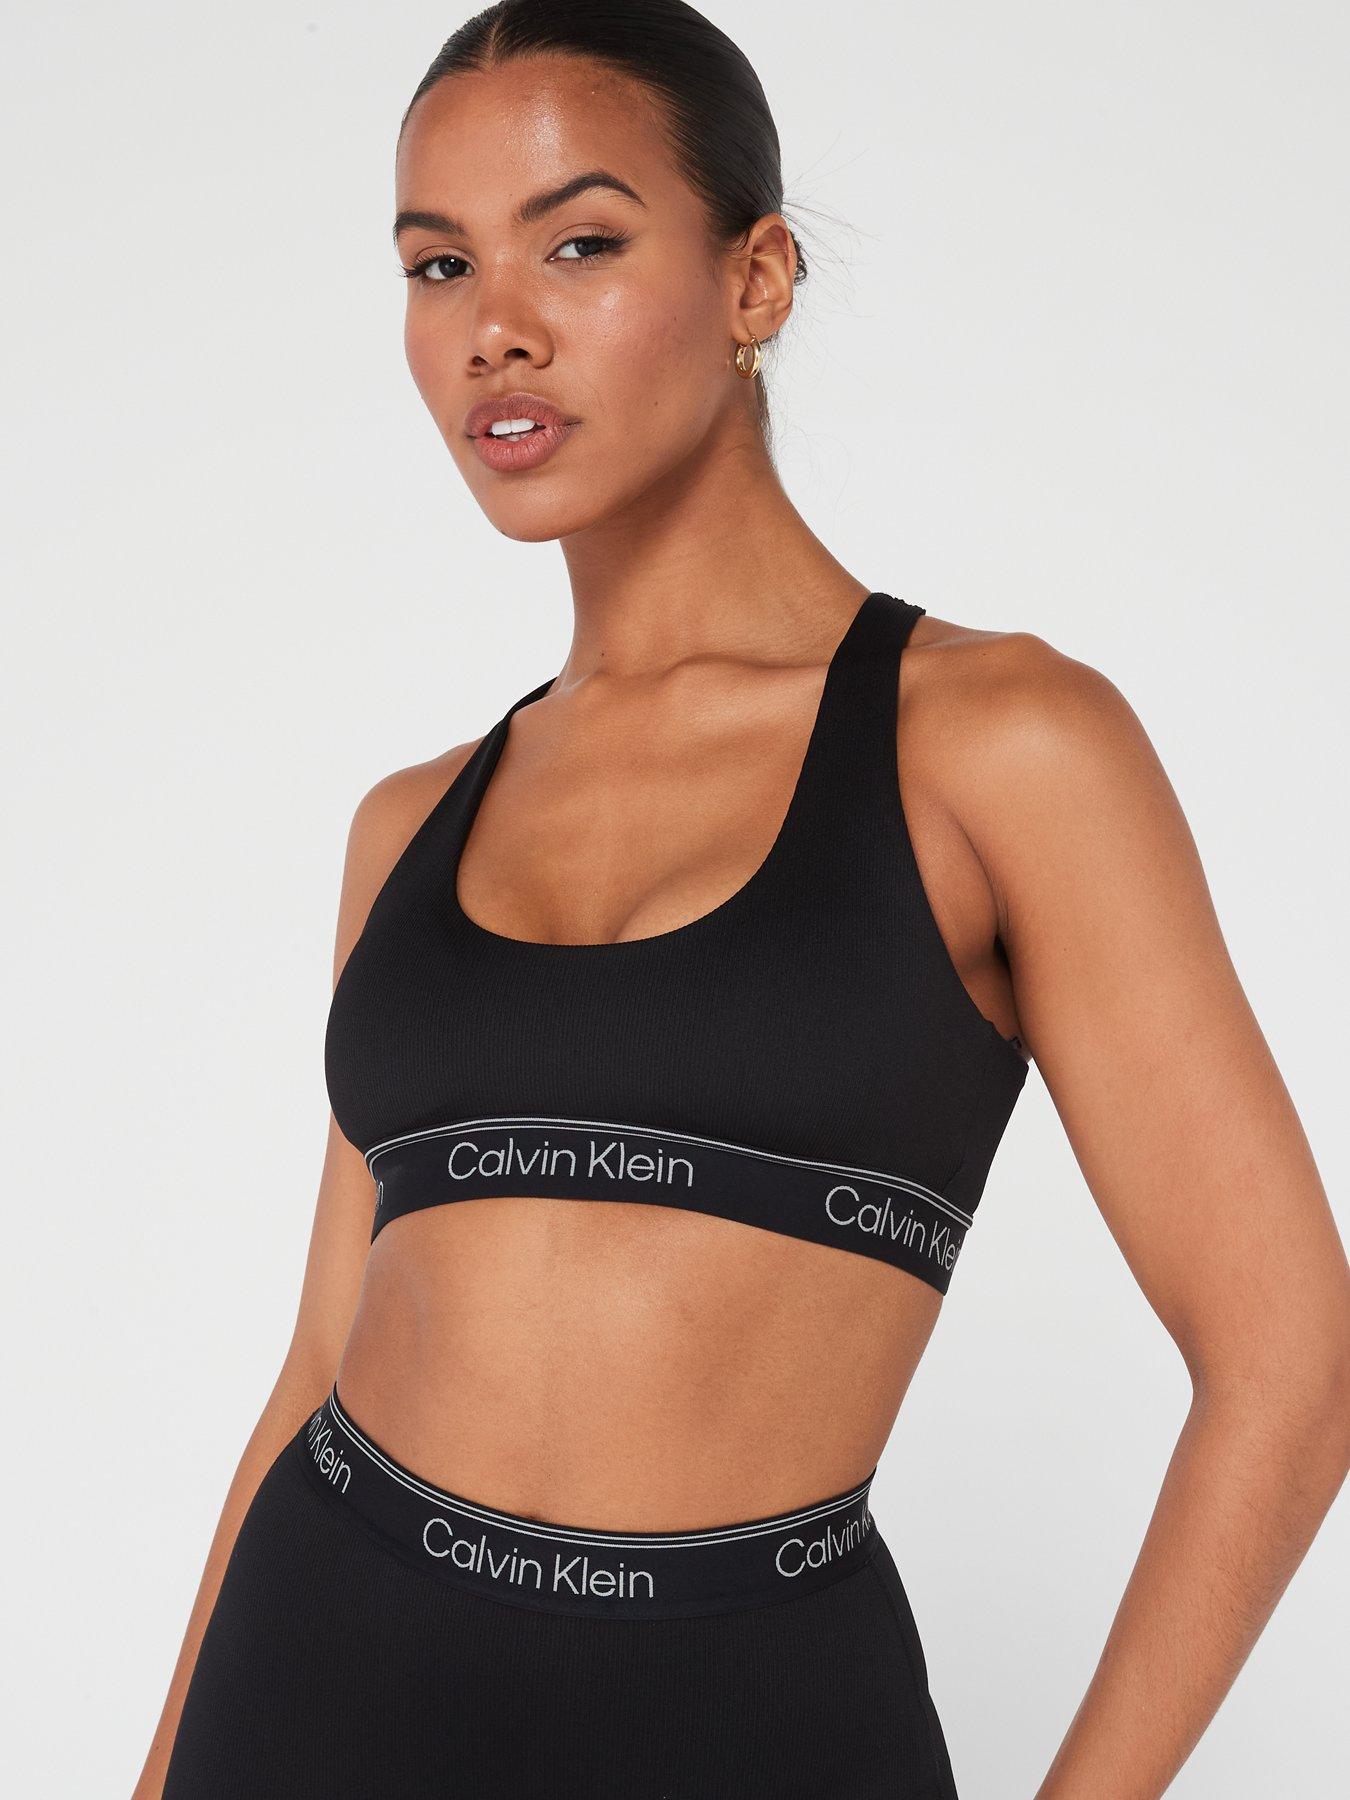 Calvin Klein Performance Sports Bras, Women's Sportswear